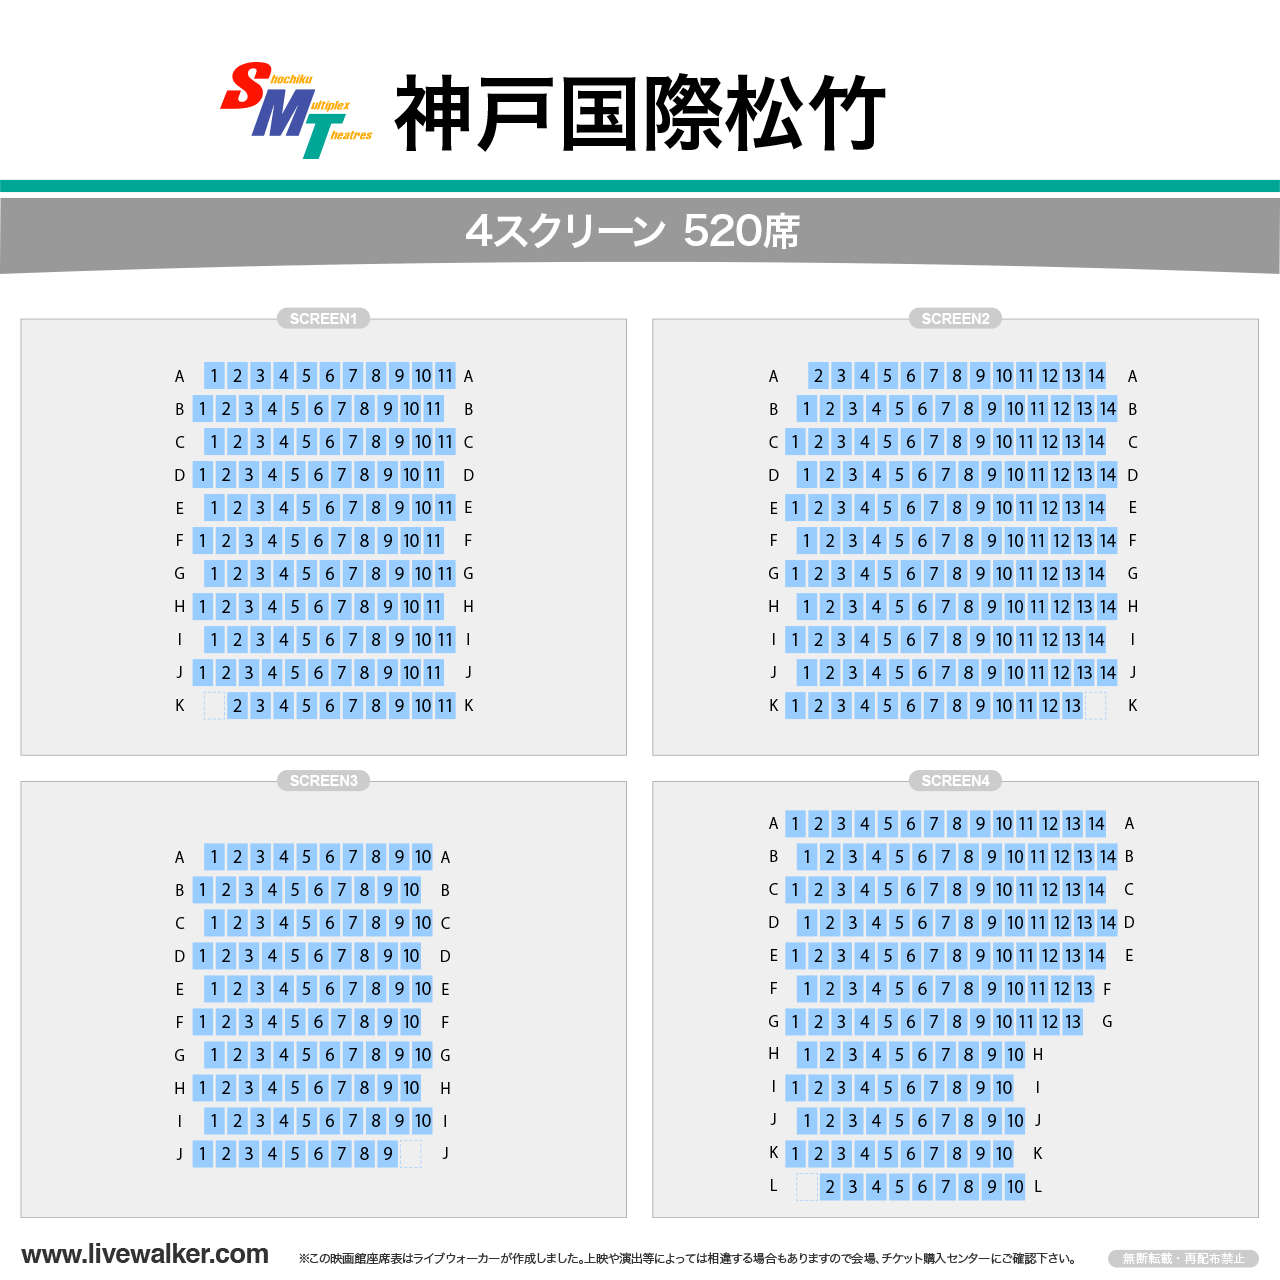 神戸国際松竹スクリーンの座席表